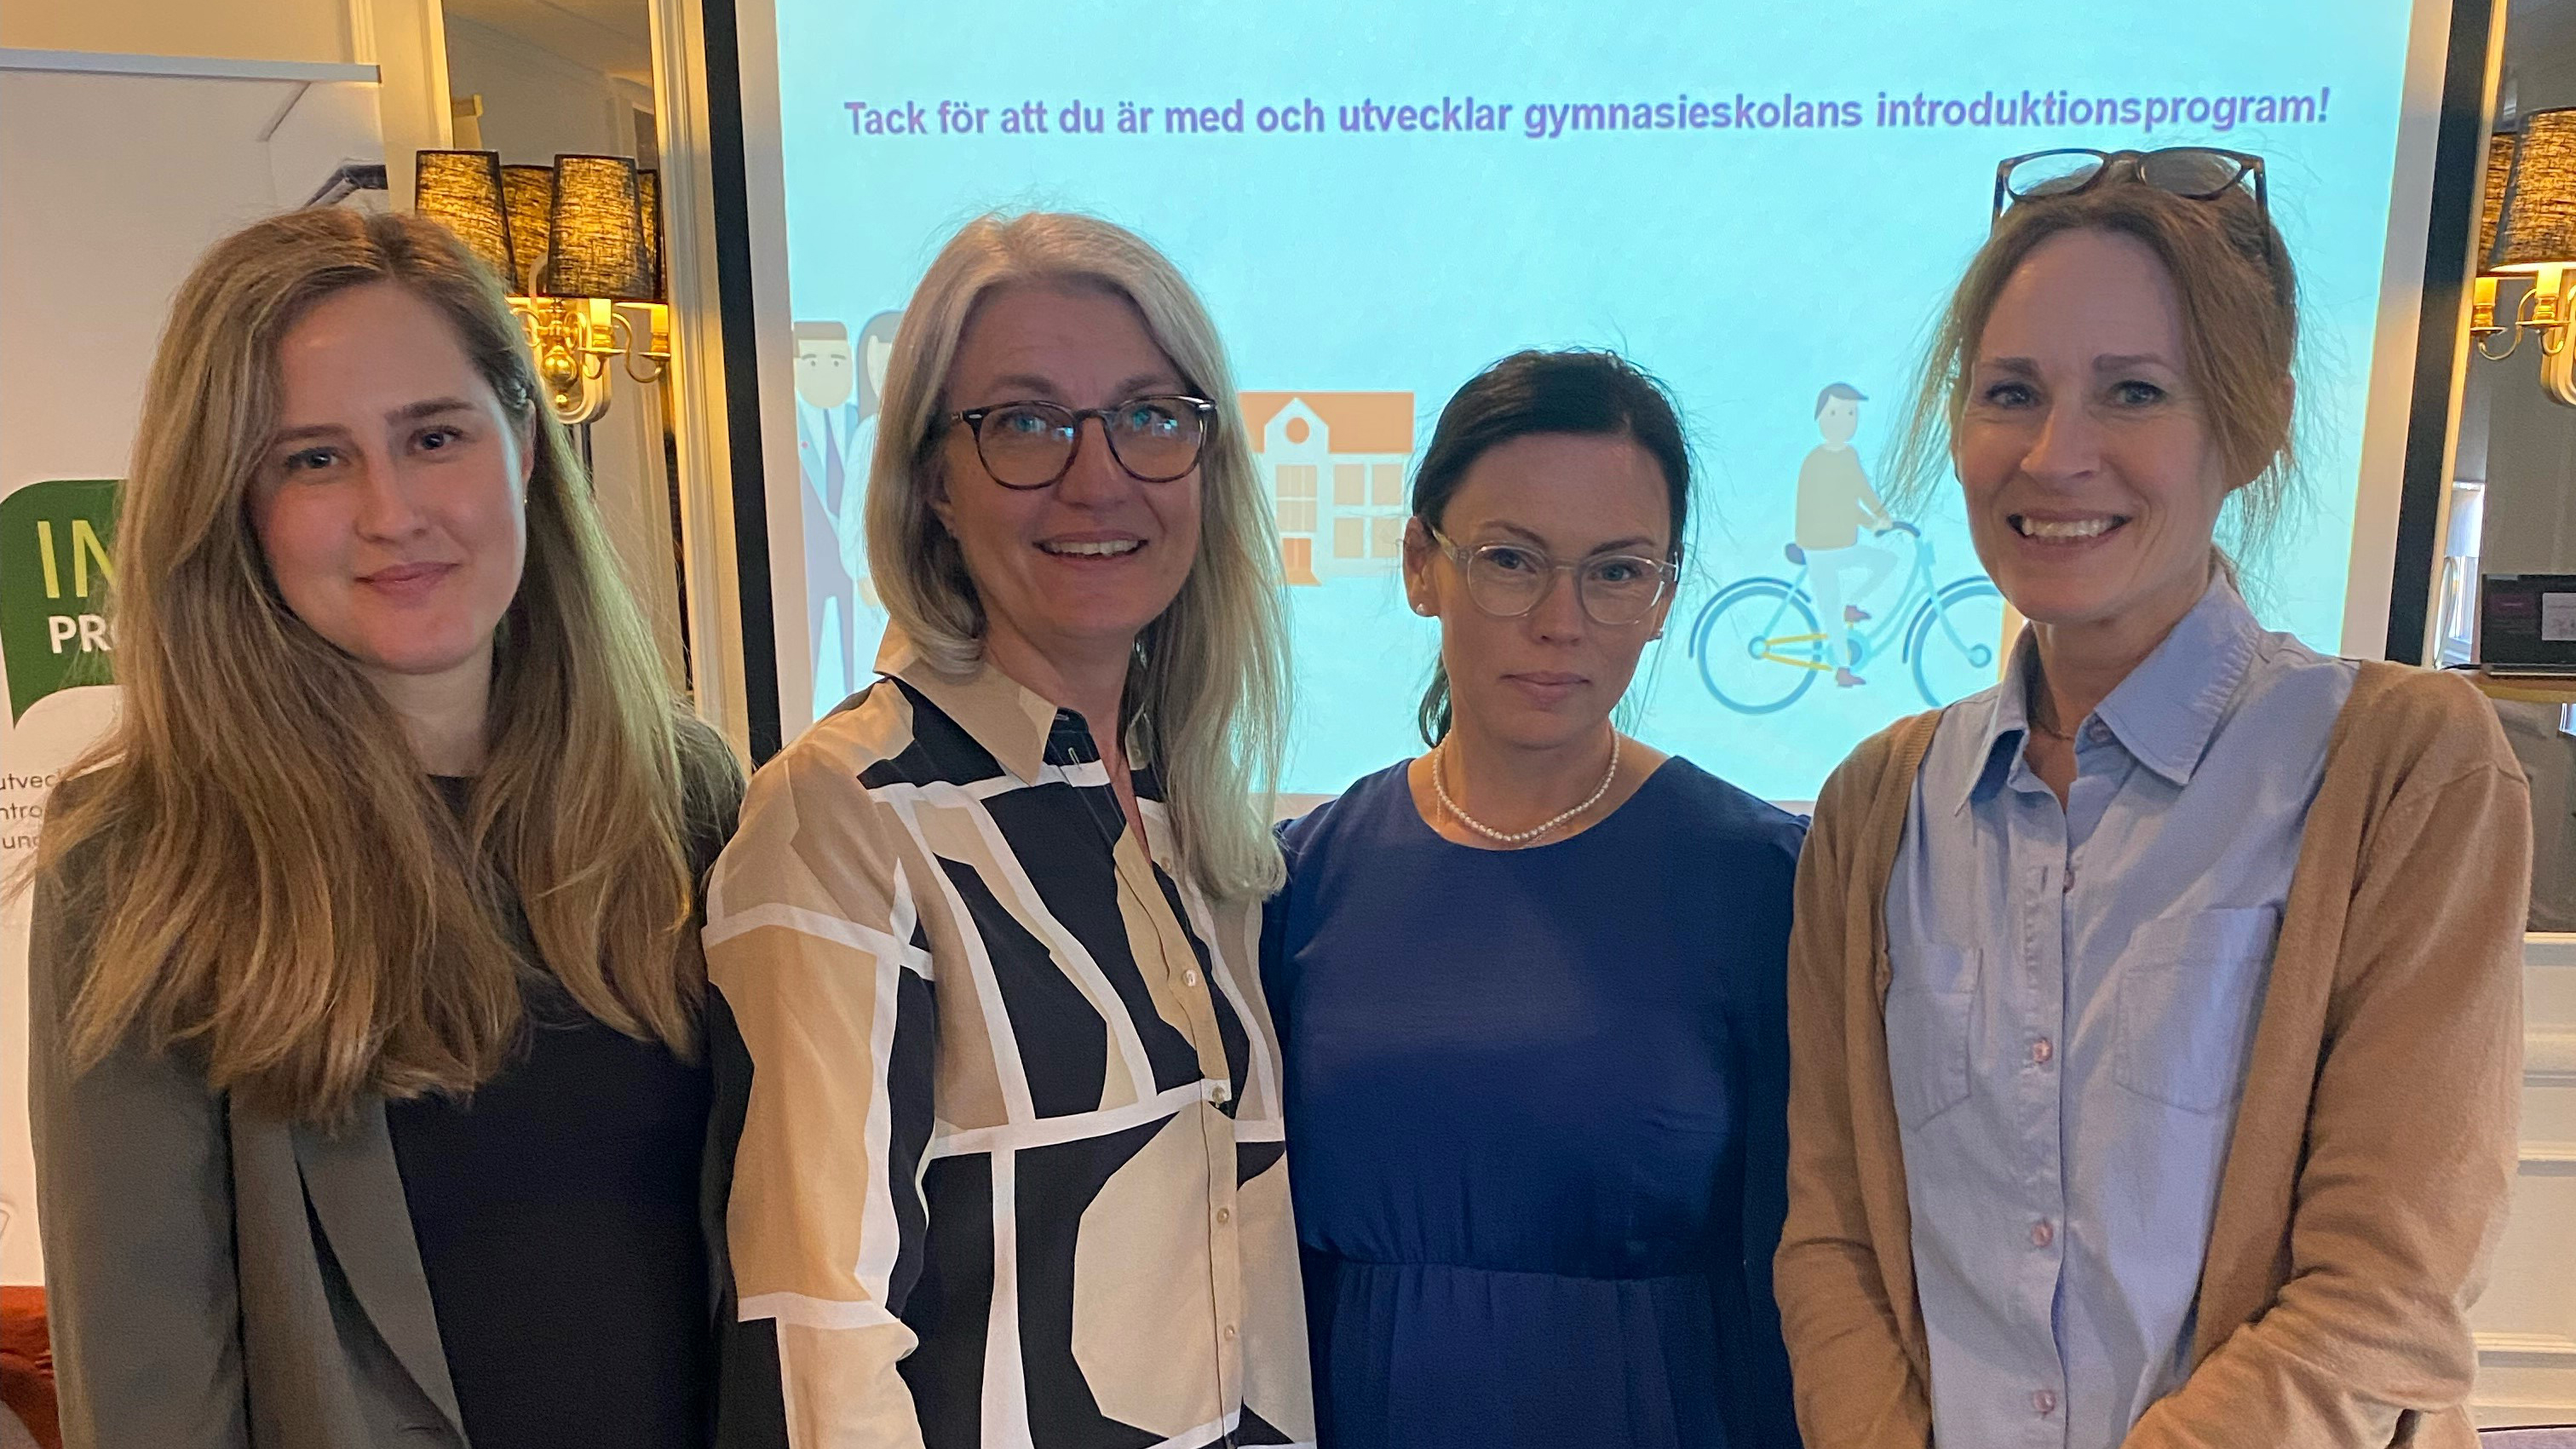 Från höger: Lovisa Fransson SKR, Camilla Holmberg Skolverket, Sara Holm Skaraborgs Kommunalförbund, Anna Liljeström SKR